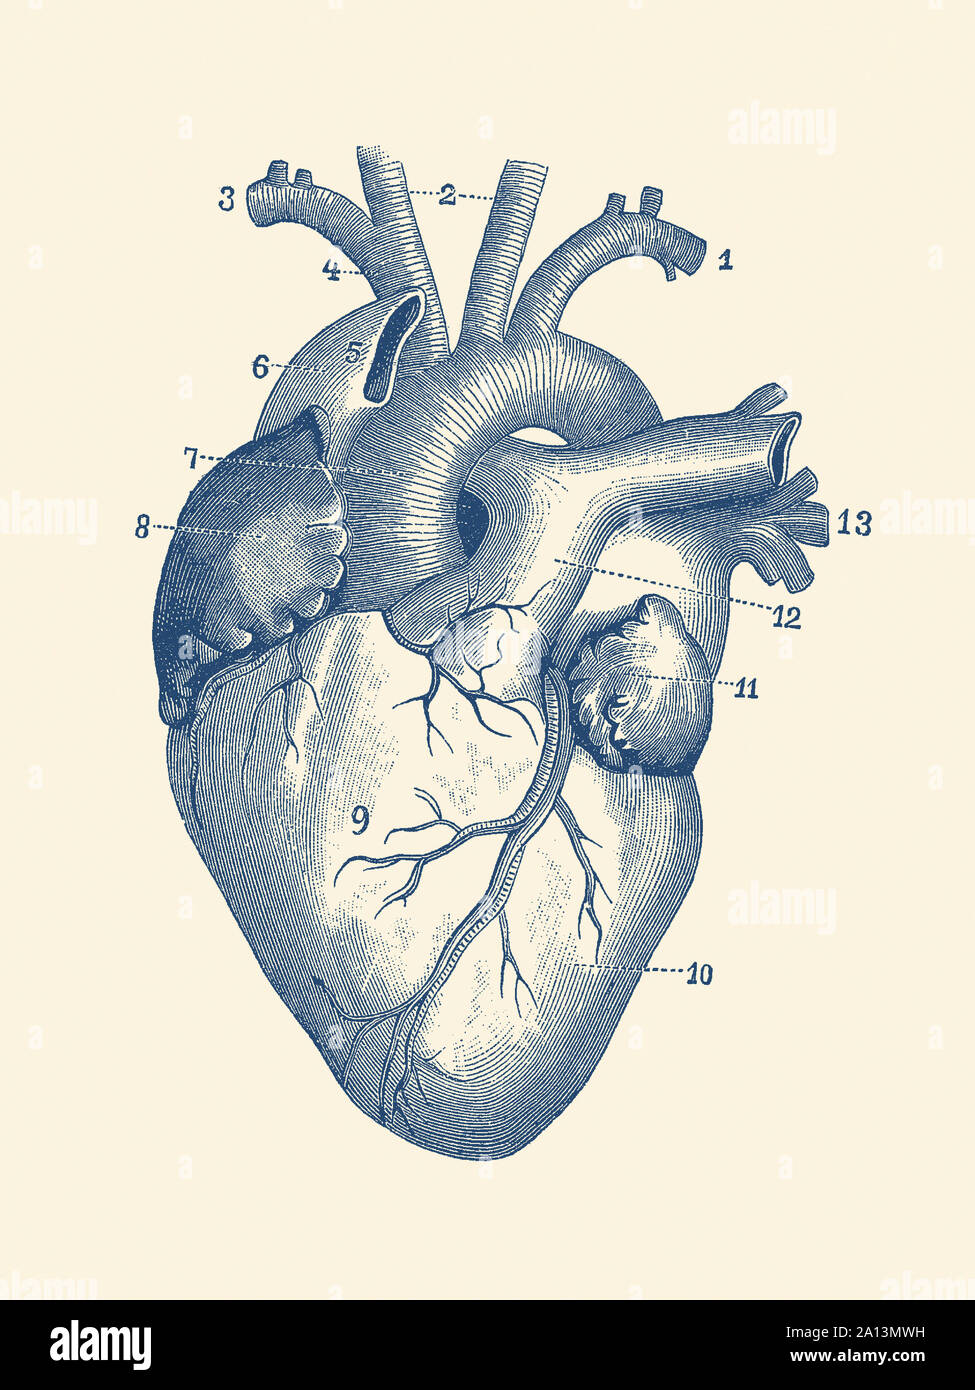 Vintage stampa anatomia del cuore umano con le vene visibili. Foto Stock